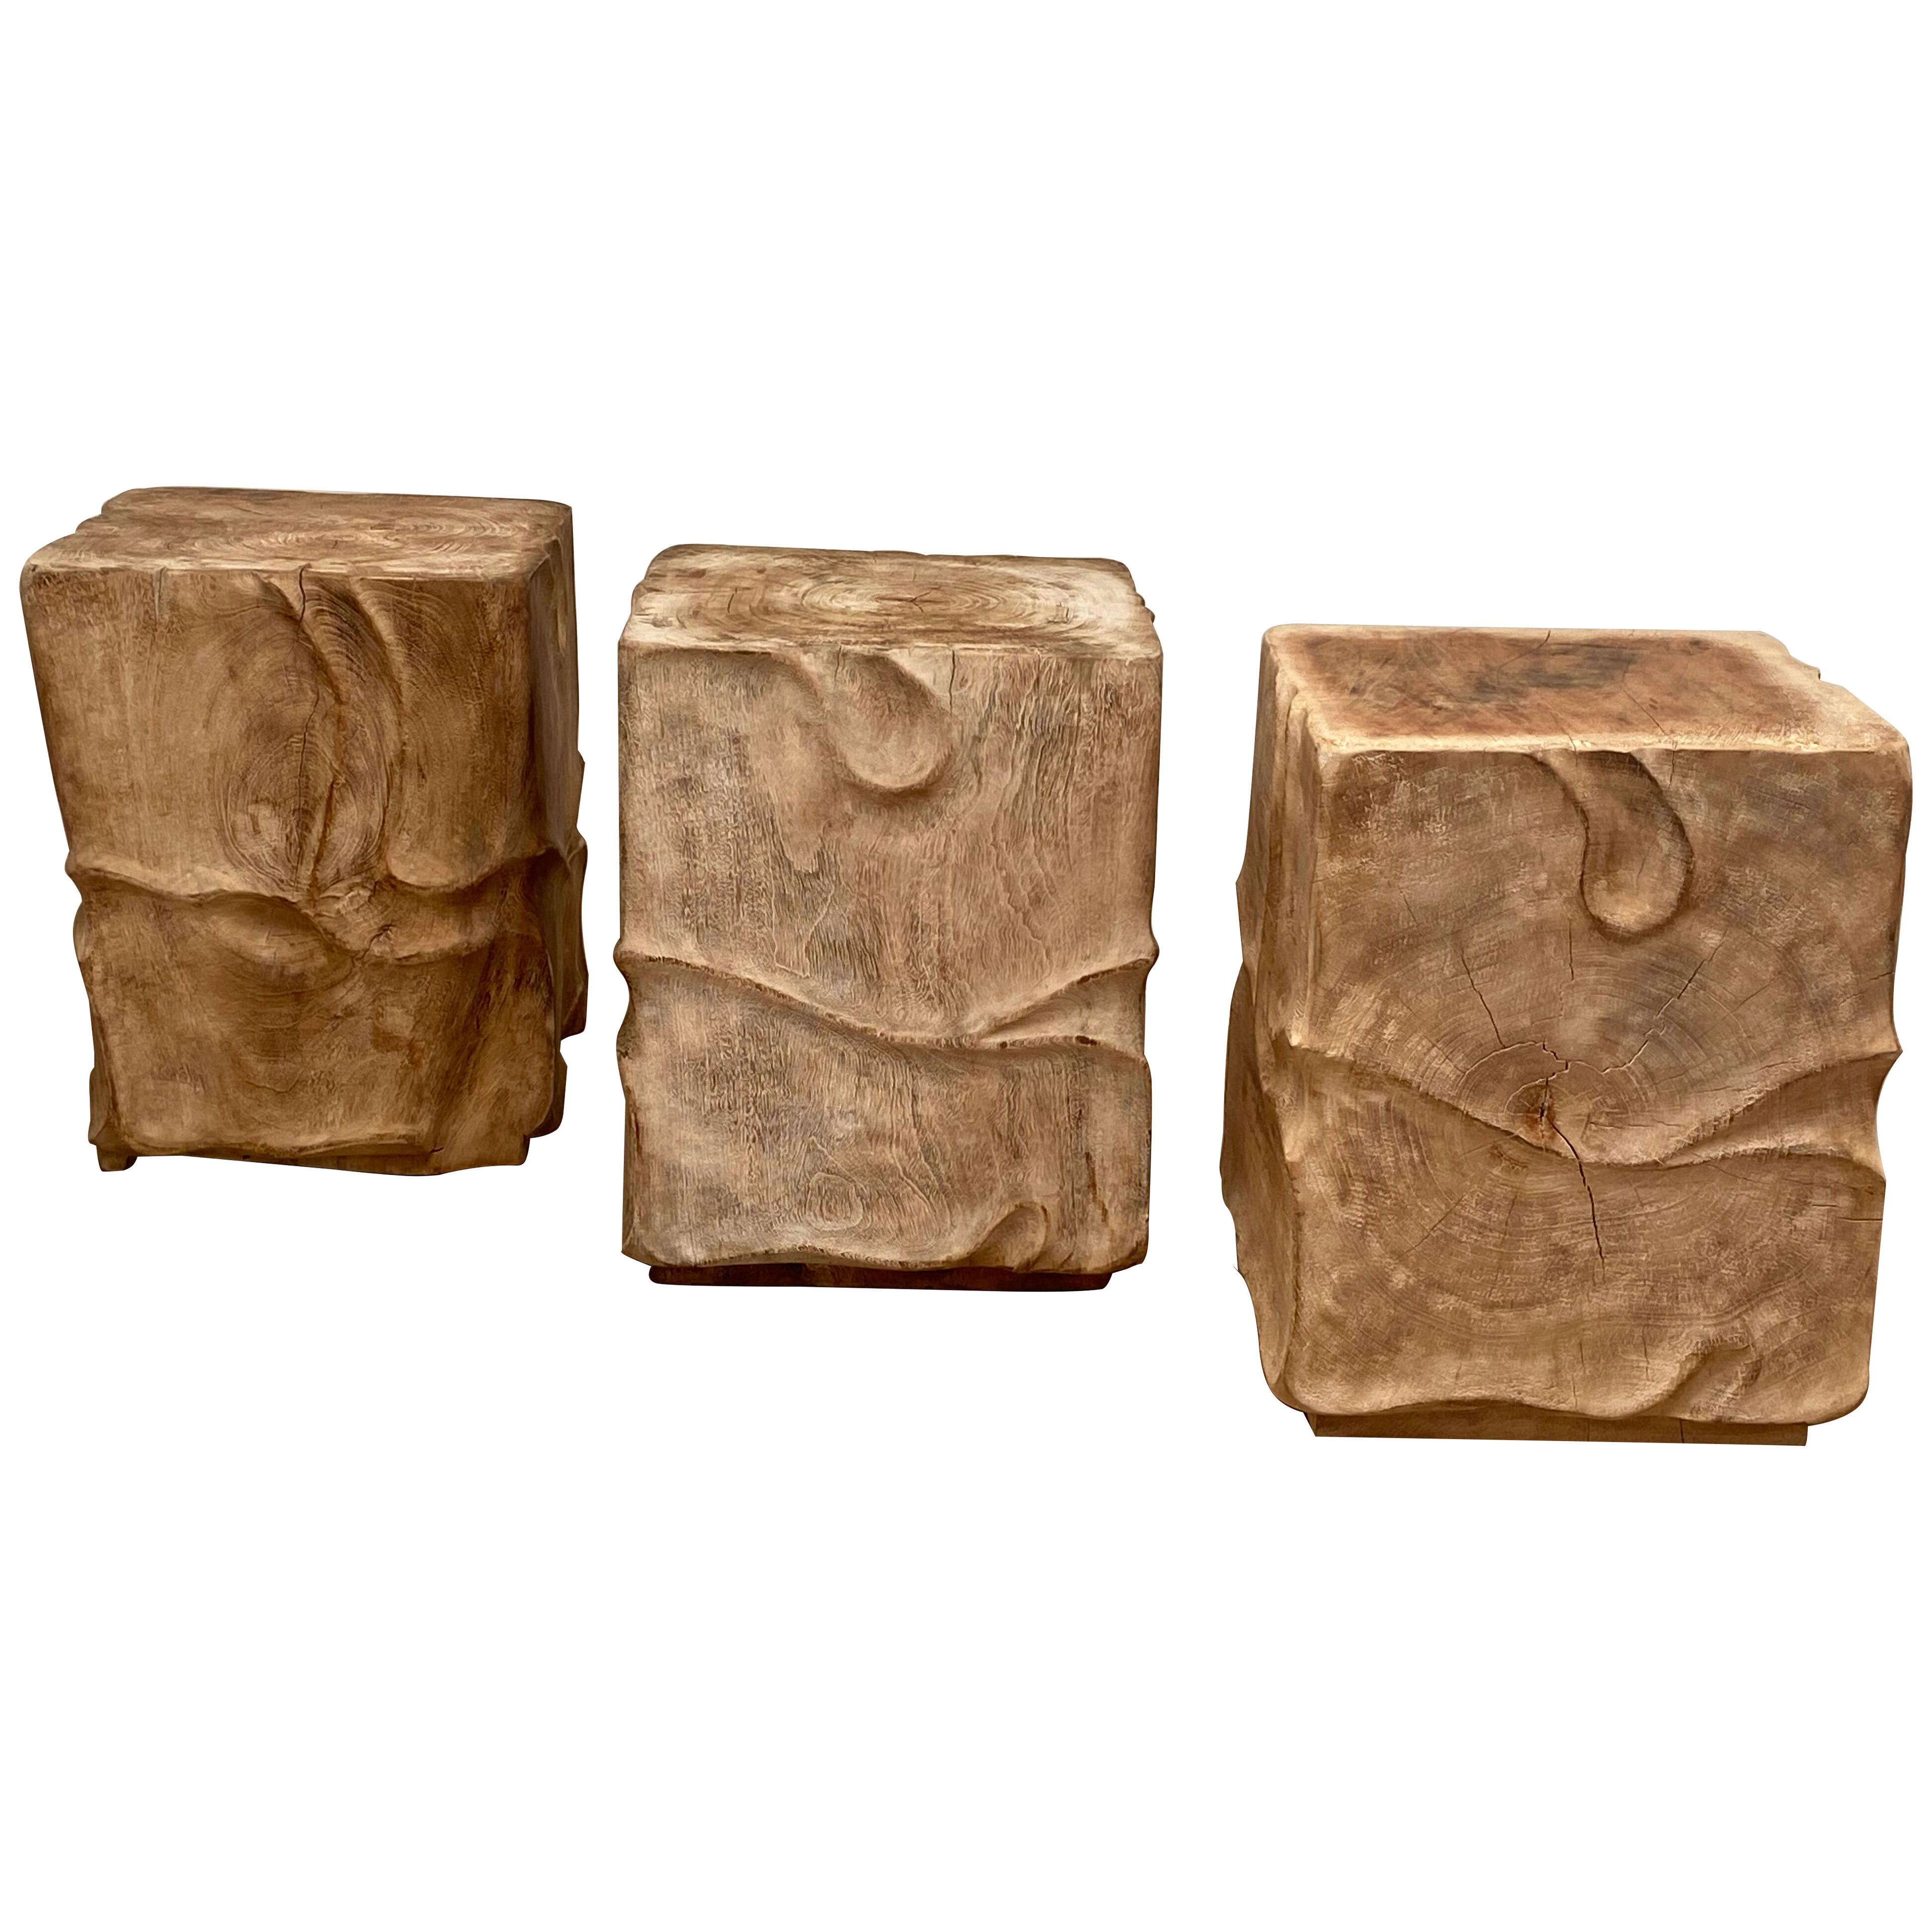 Set of 3 Brutalist Wooden Blocks